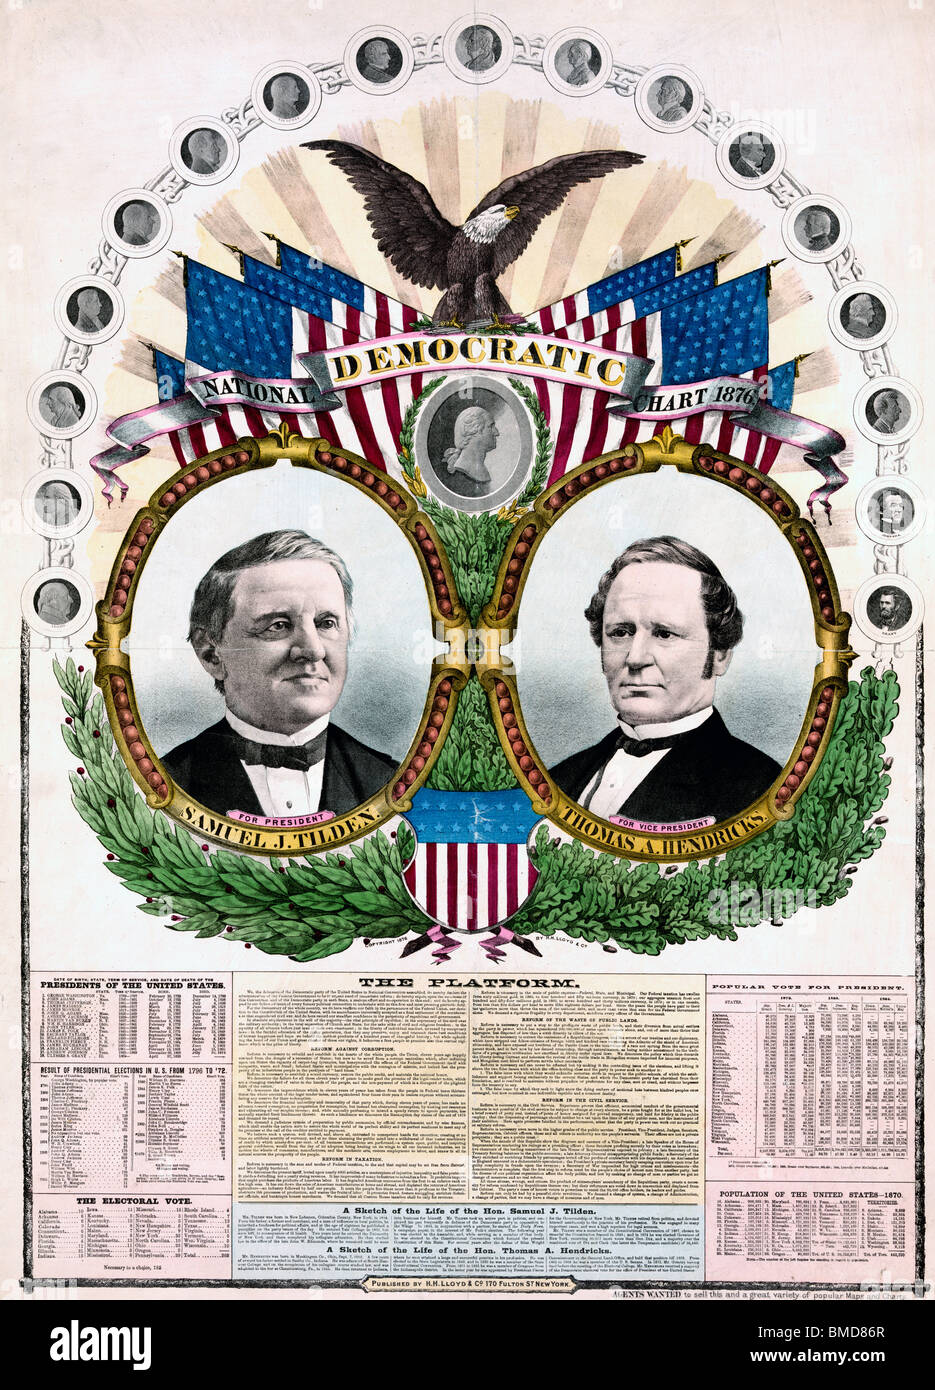 Tableau national démocratique, l'élection présidentielle de 1876 - Pour le président, Samuel J. Tilden, vice-président, Thomas A. Hendricks Banque D'Images